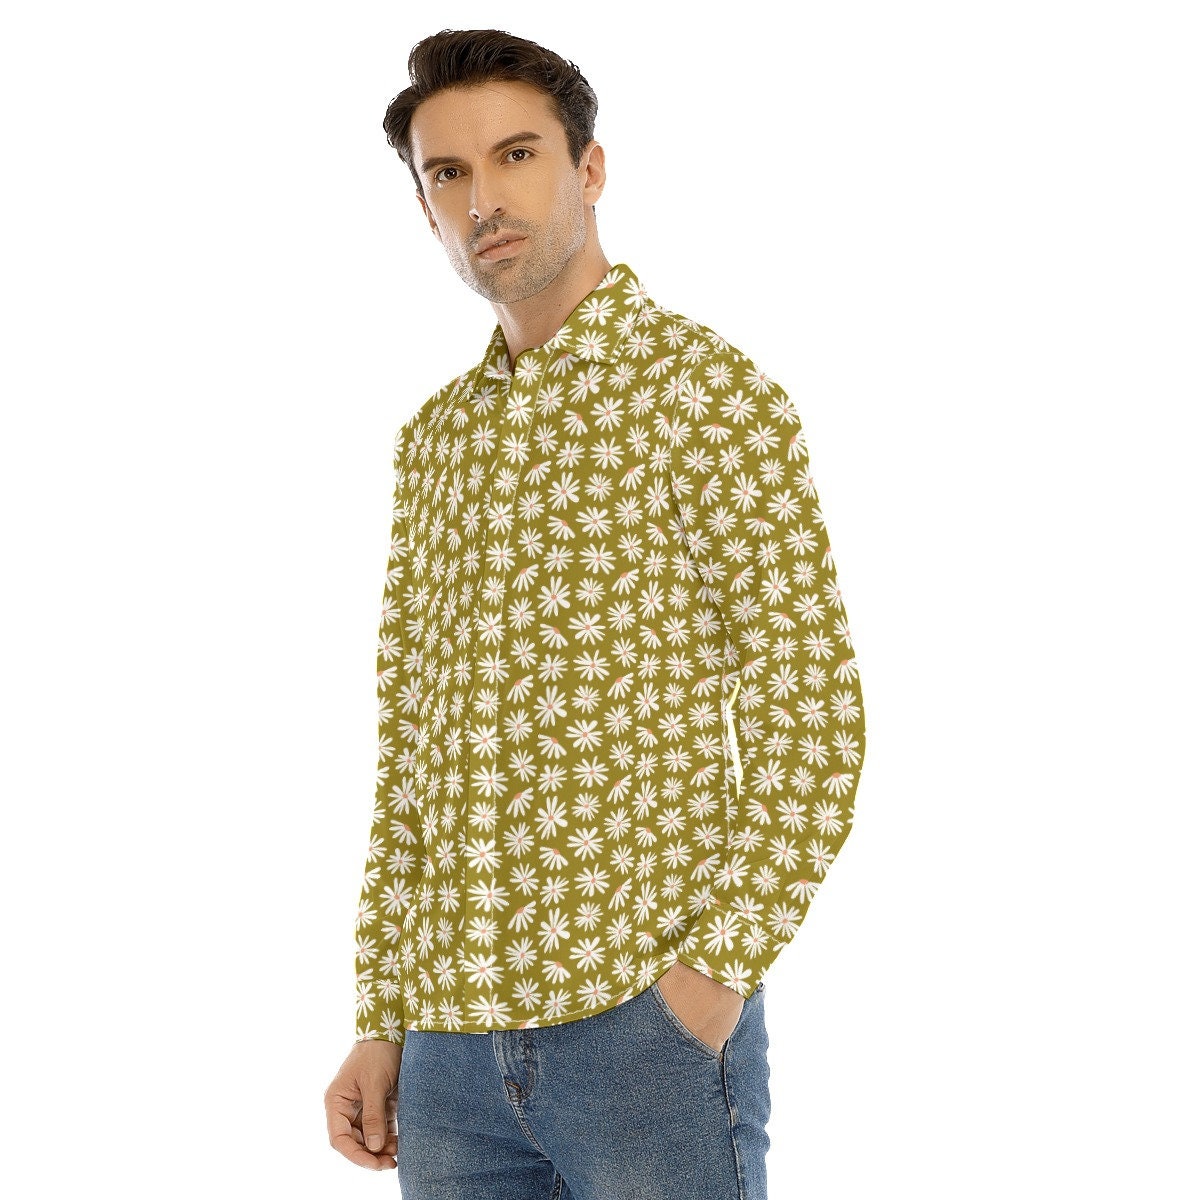 Vintage-Shirt im 70er-Jahre-Stil, grünes Blumenhemd für Herren, 70er-Jahre-Kleidung für Herren, Retro-Shirt für Herren, Hippie-Shirt für Herren, 70er-Shirt für Herren, 70er-Jahre-inspiriertes Hemd